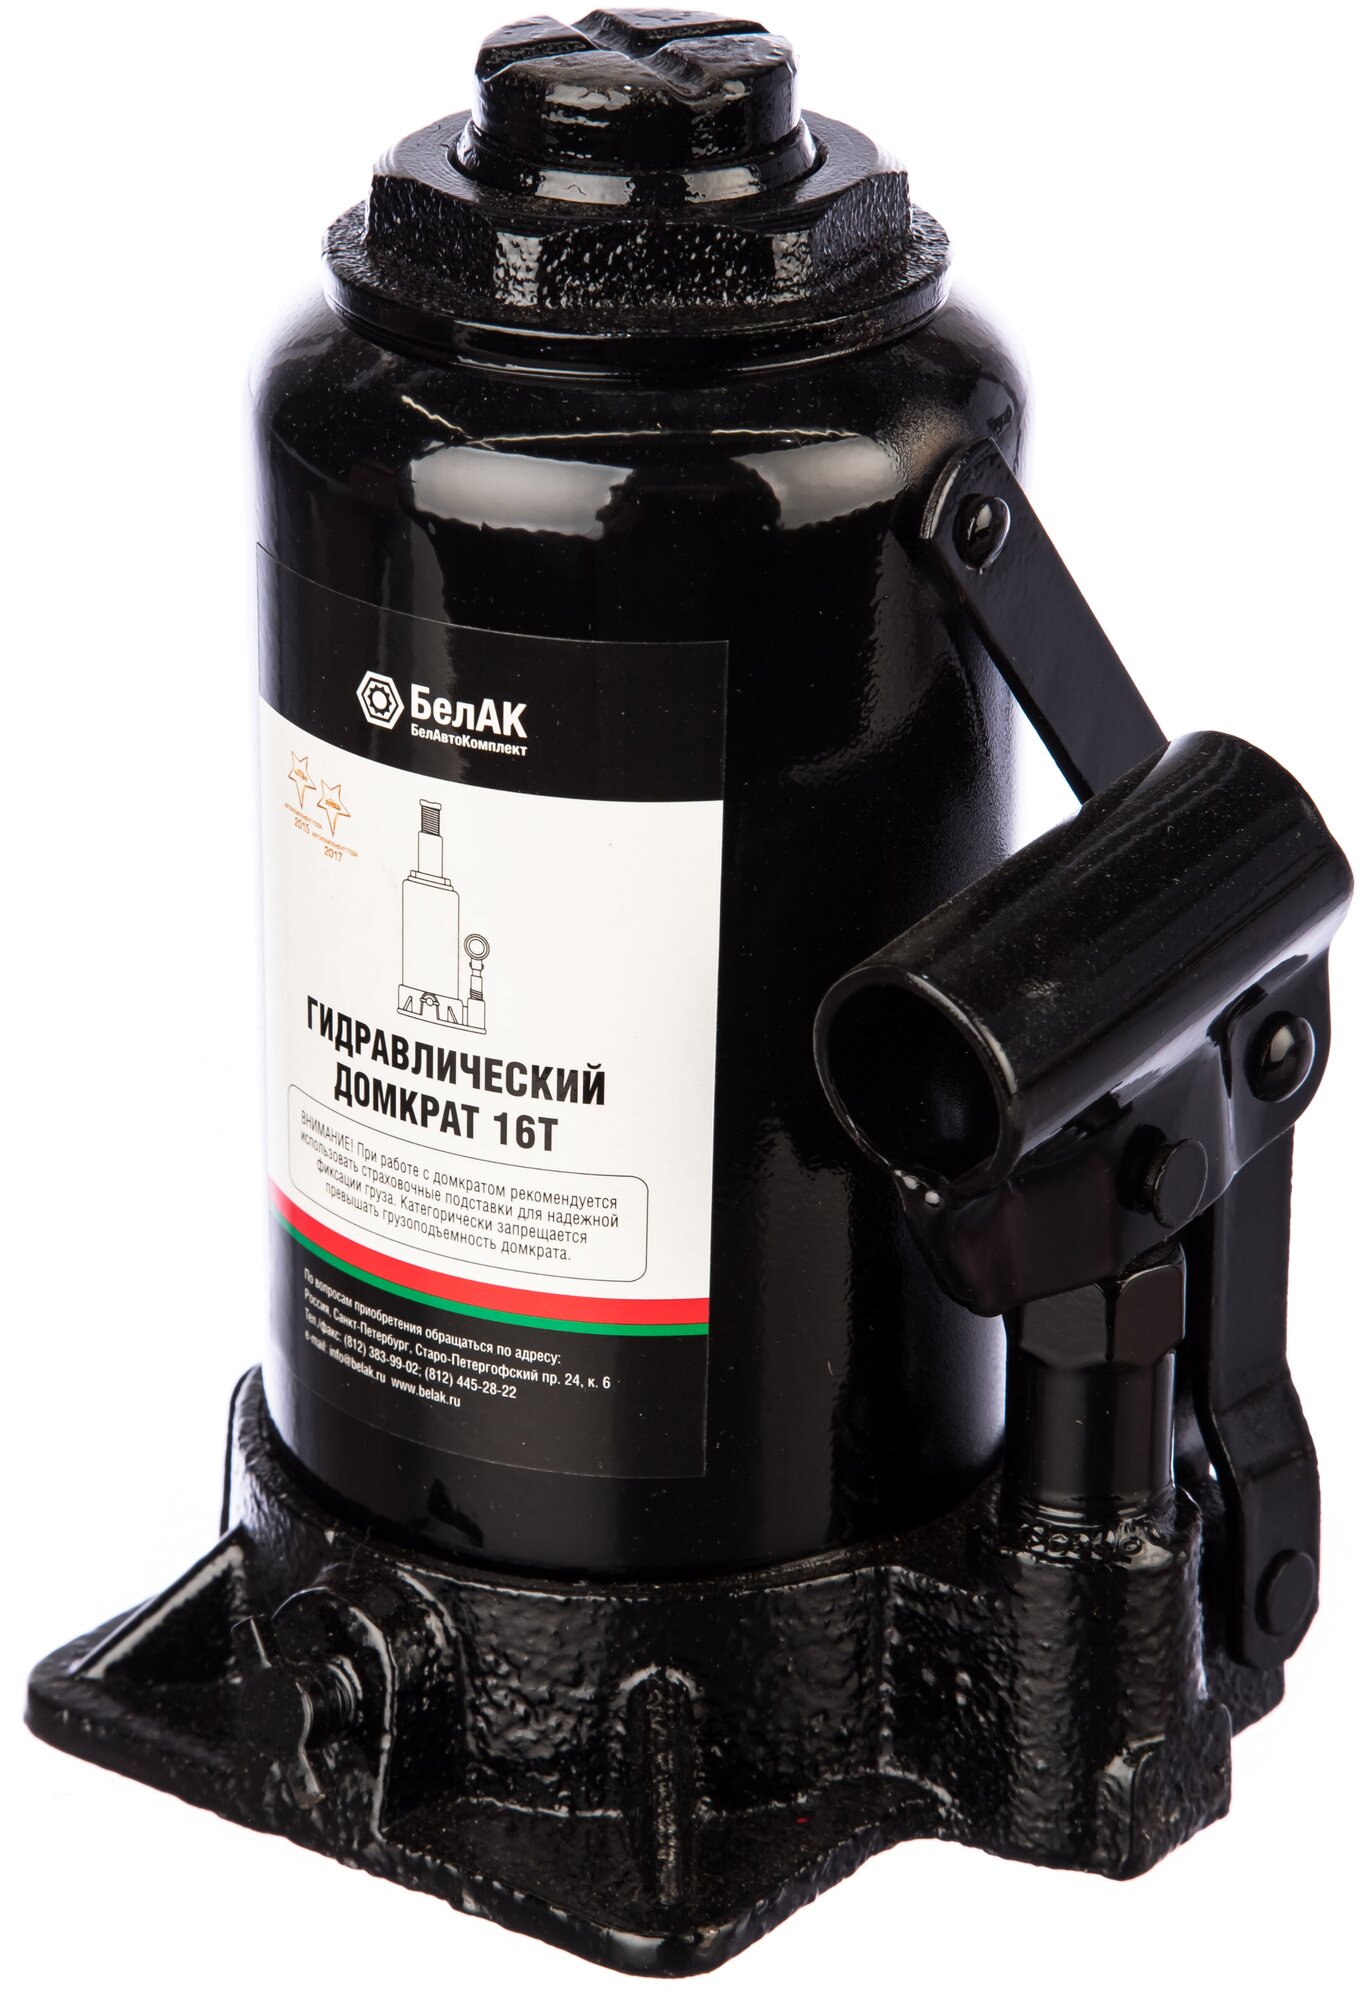 Домкрат бутылочный гидравлический для мототехники БелАК БАК00048 (16 т)